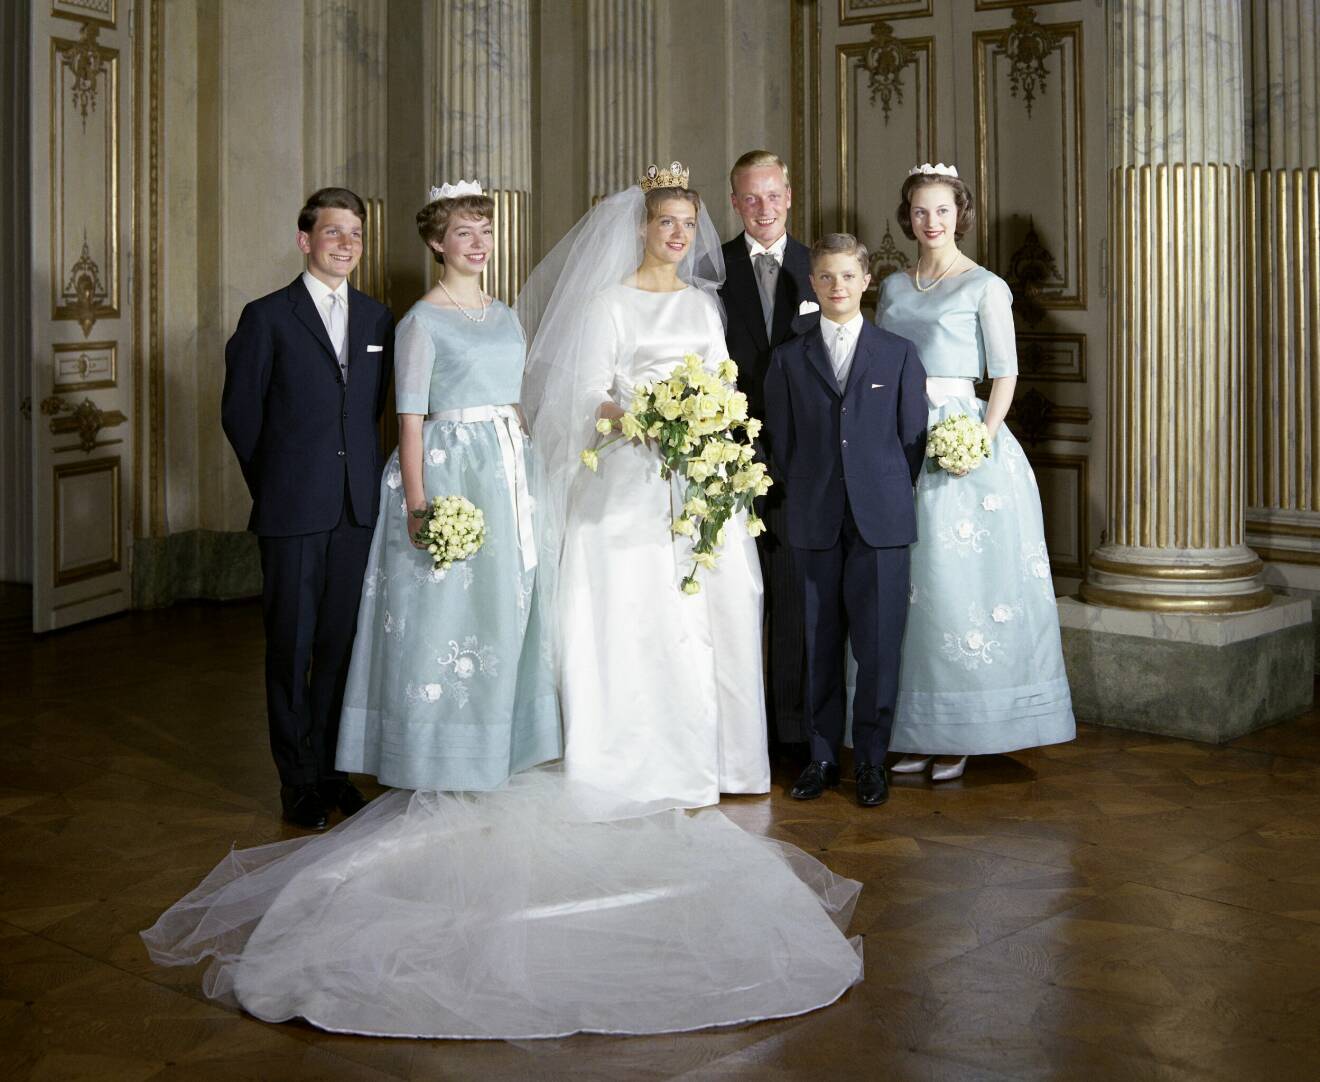 År 1961 var det kungligt bröllop i Stockholm när prinsessan Birgitta och prins Johann Georg von Hohenzollern gifte sig. Lillebror kronprins Carl Gustaf syns till höger i bild.